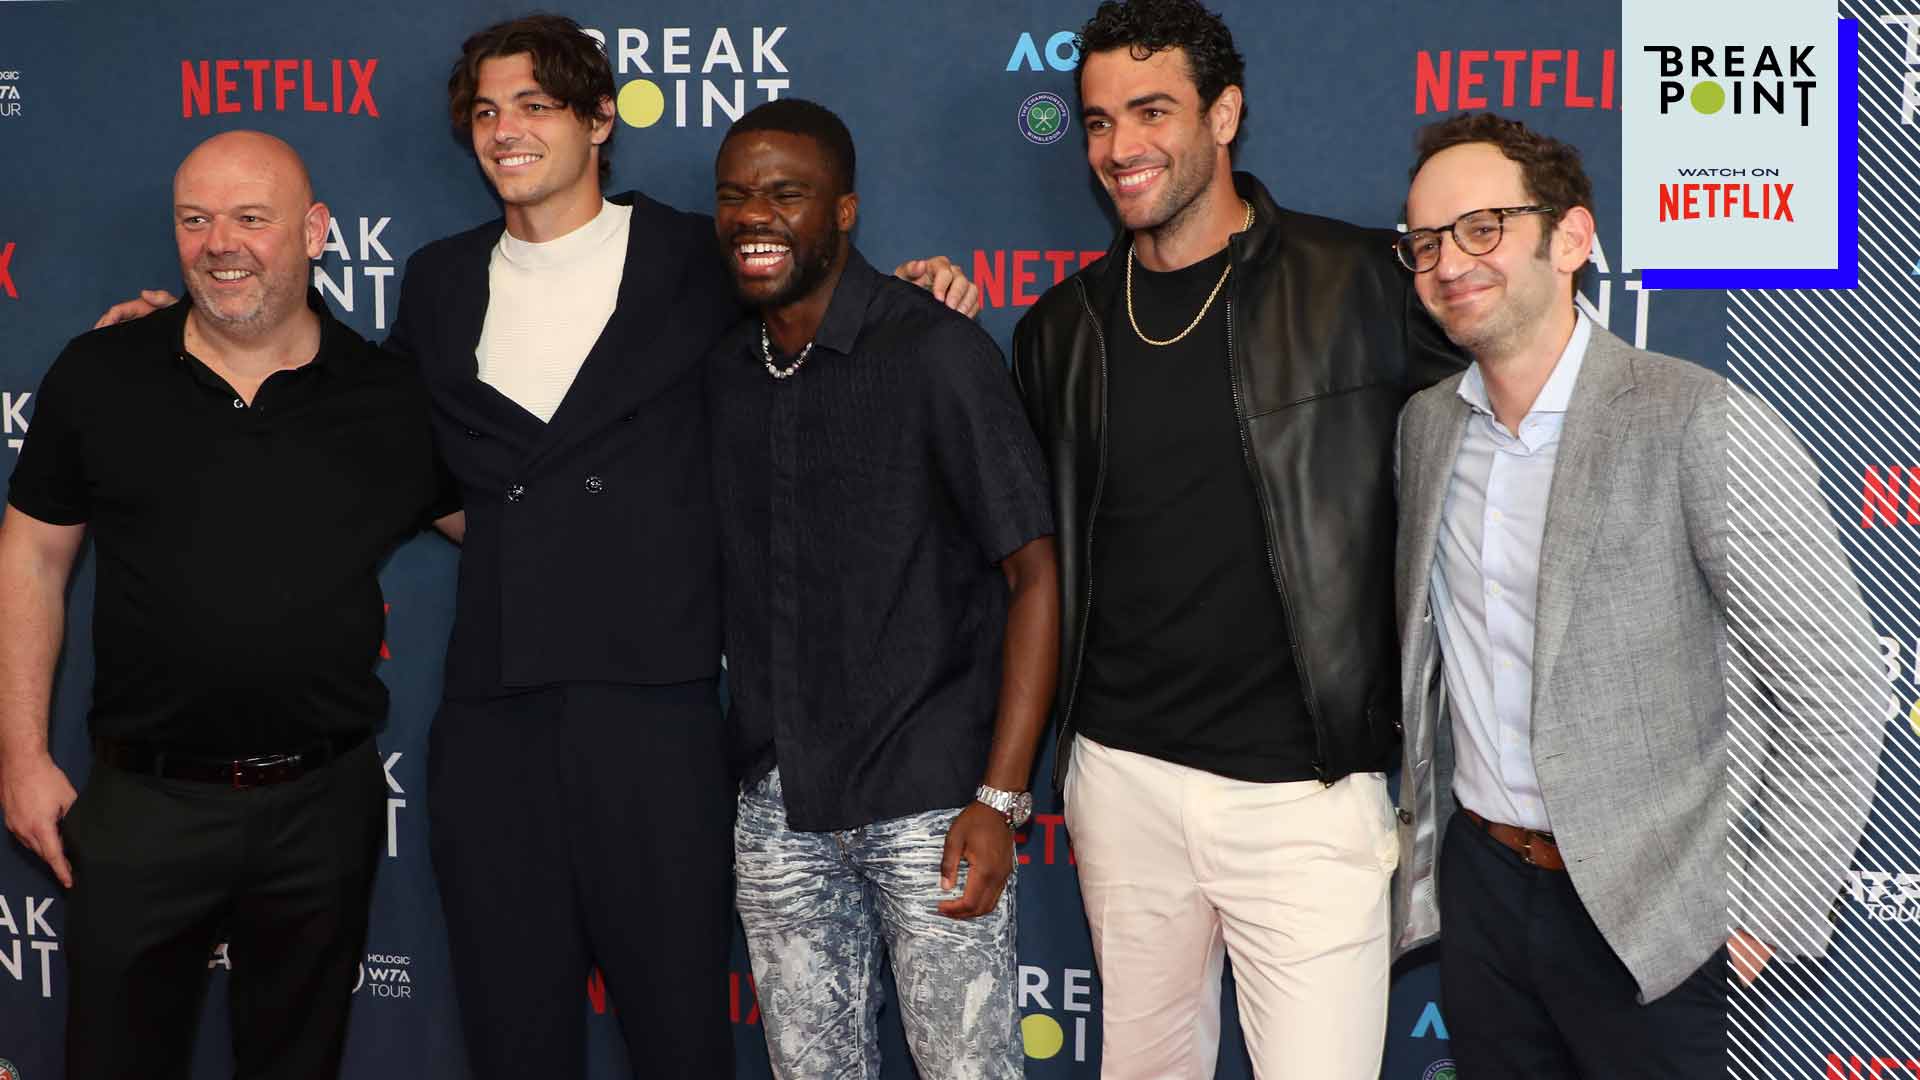 El productor ejecutivo de Break Point, Paul Martin (izquierda), y el director de series documentales de Netflix, Gabe Spitzer, posan con los protagonistas de la serie en enero.